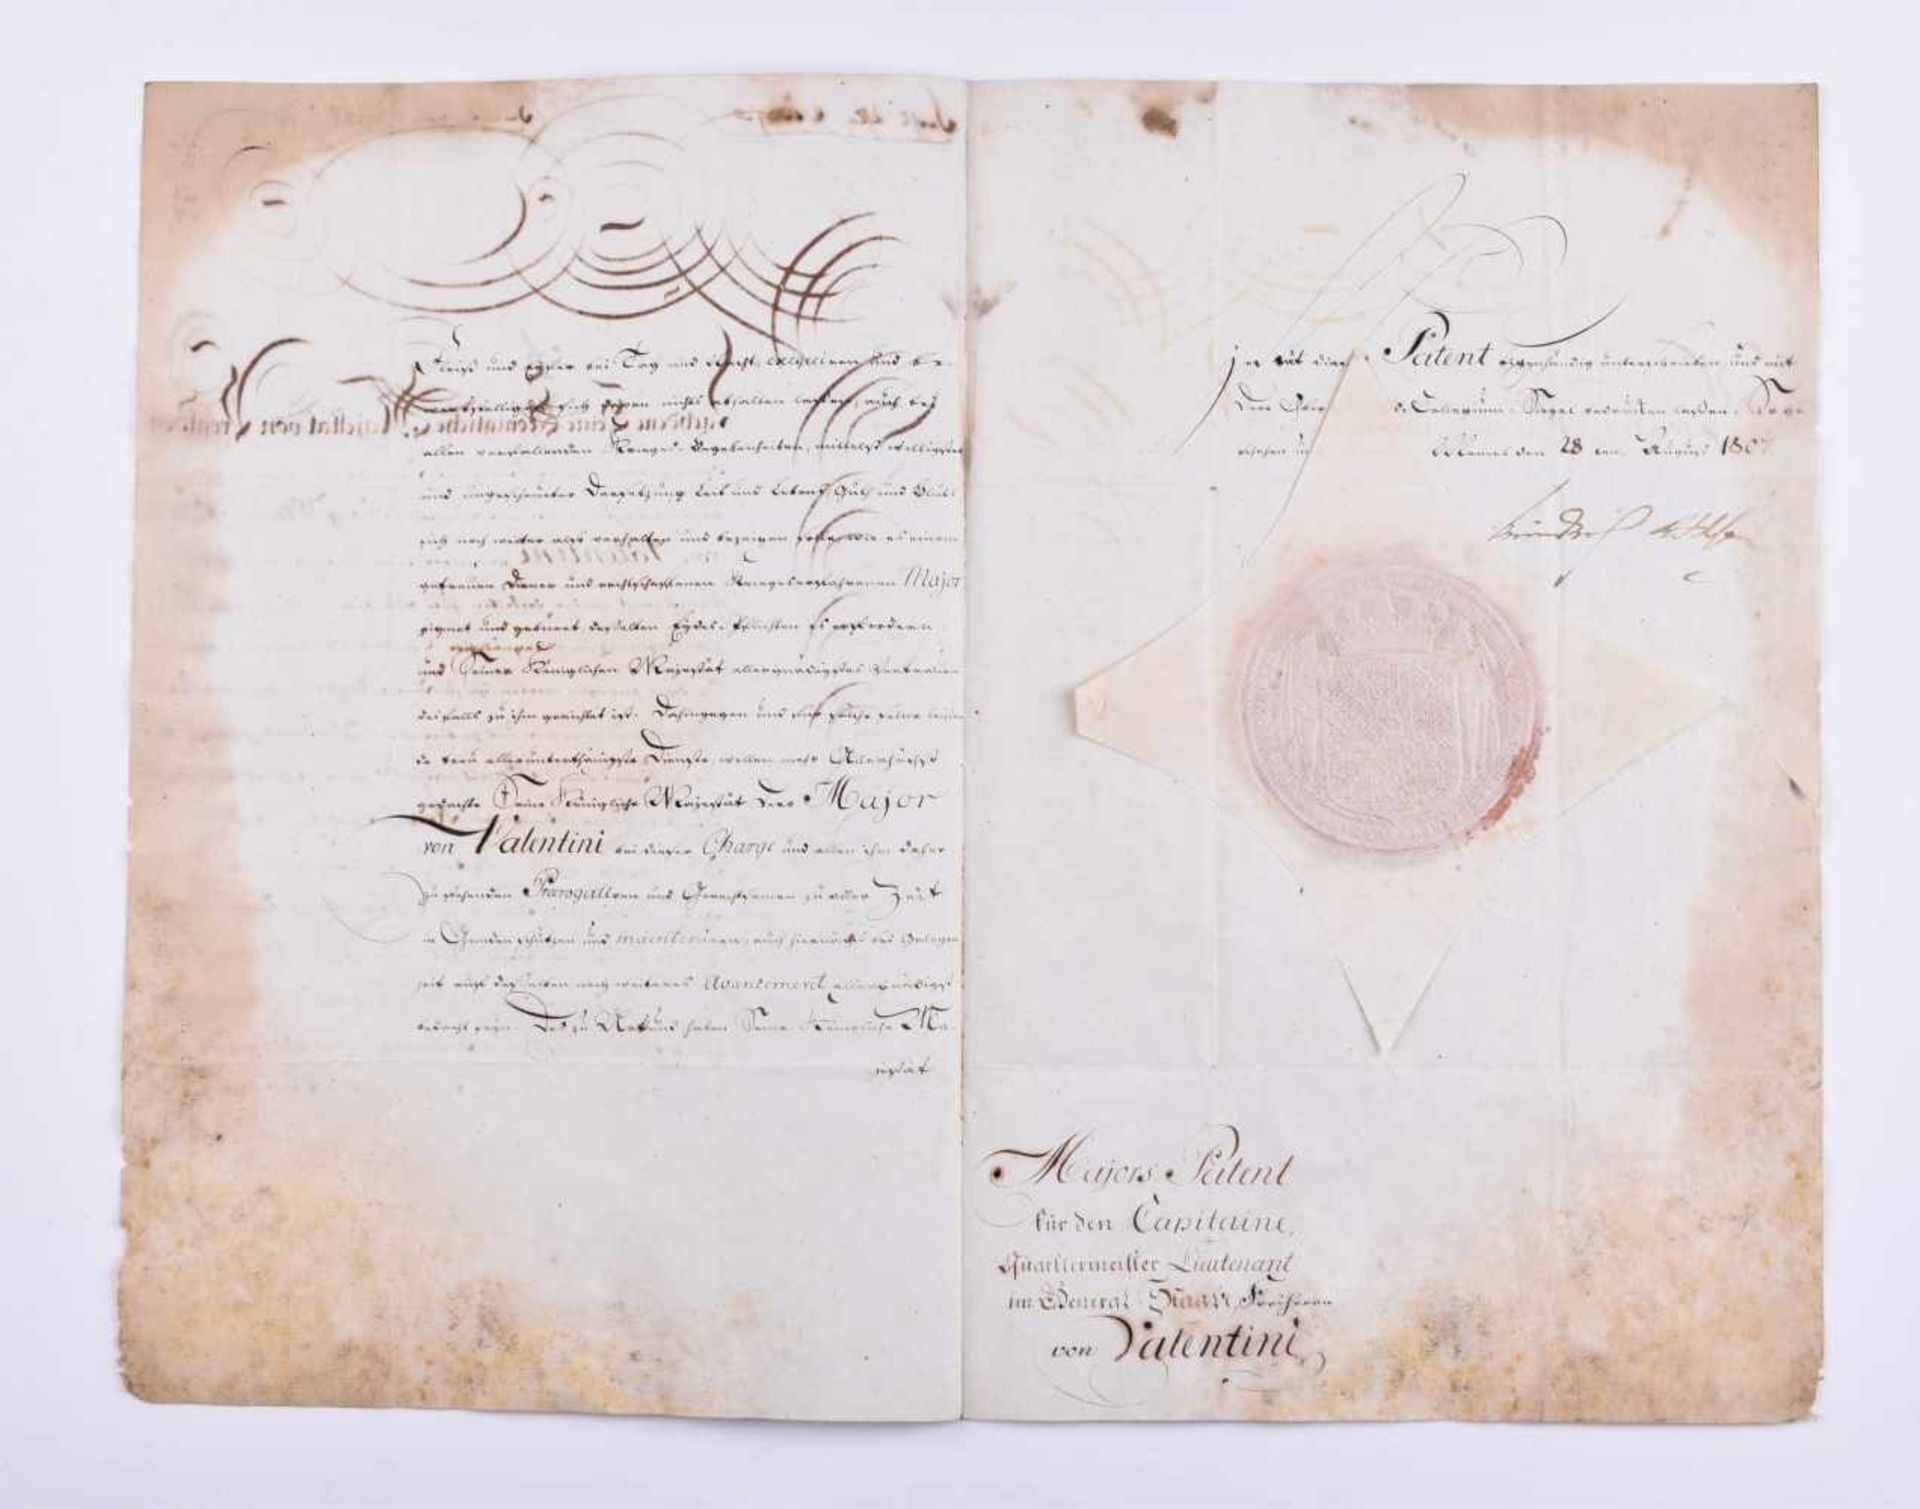 Offiziers-Patent für ValentiniPreussen, Offiziers-Patent für Georg Wilhelm von Valentini MajorPatent - Bild 2 aus 5